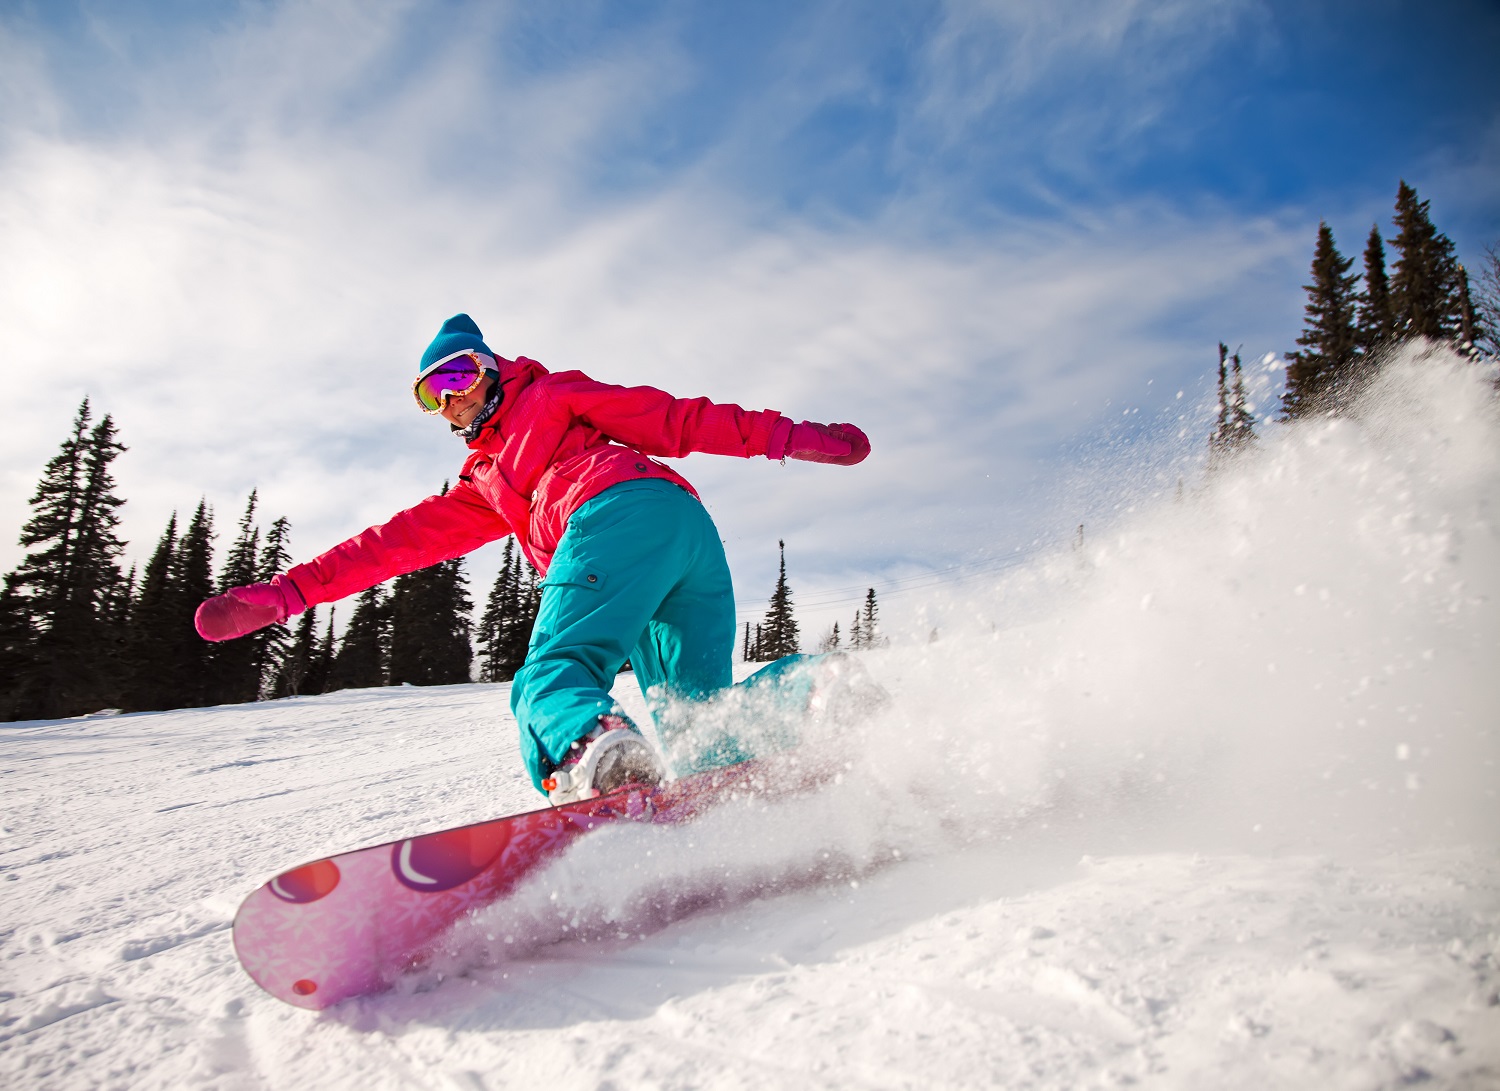 Tutorial básico: Cómo encerar tus esquís o tabla de snowboard 